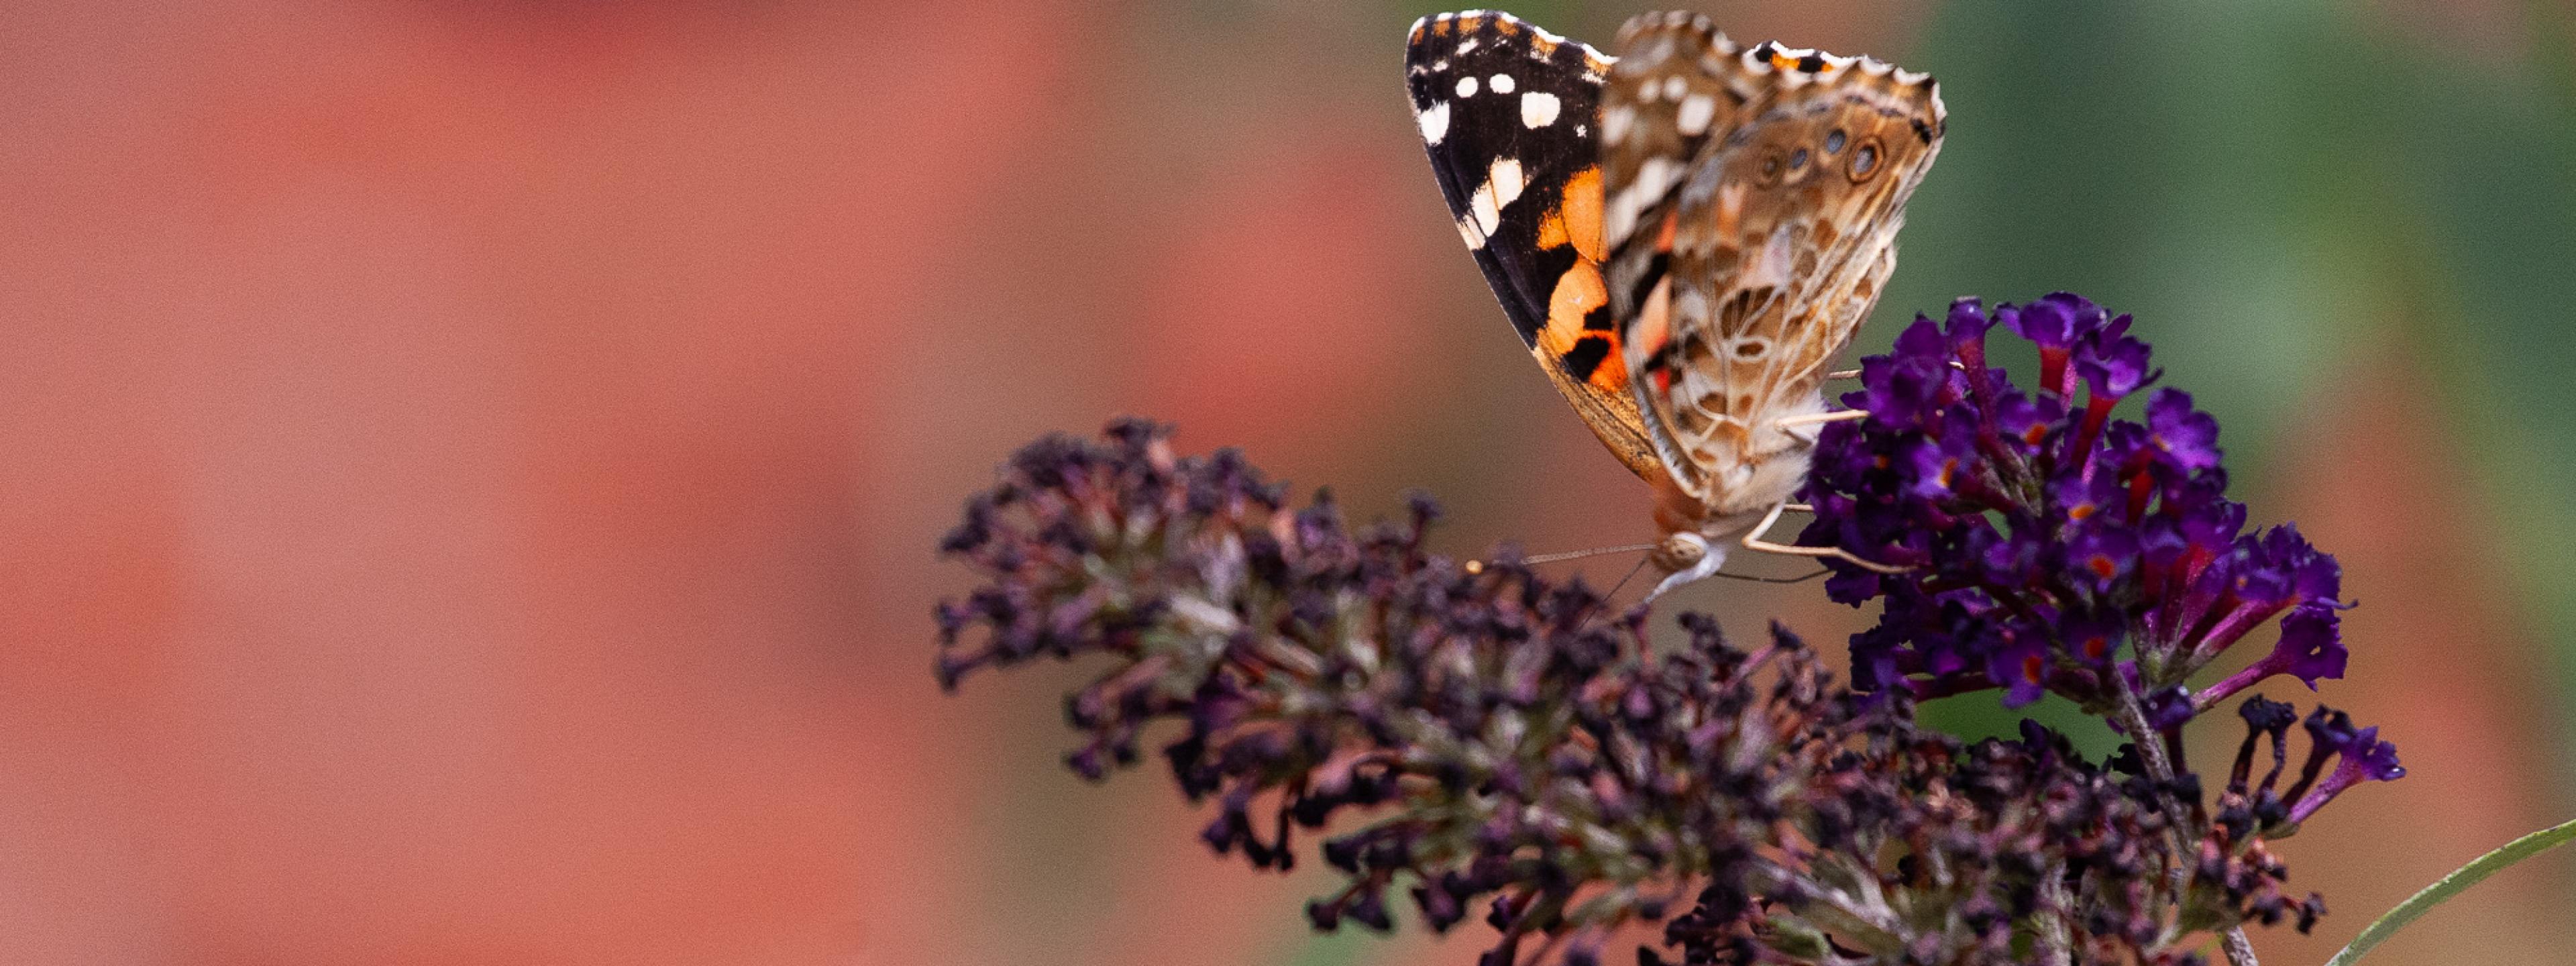 Ein Schmetterling auf einer Blütentraube.